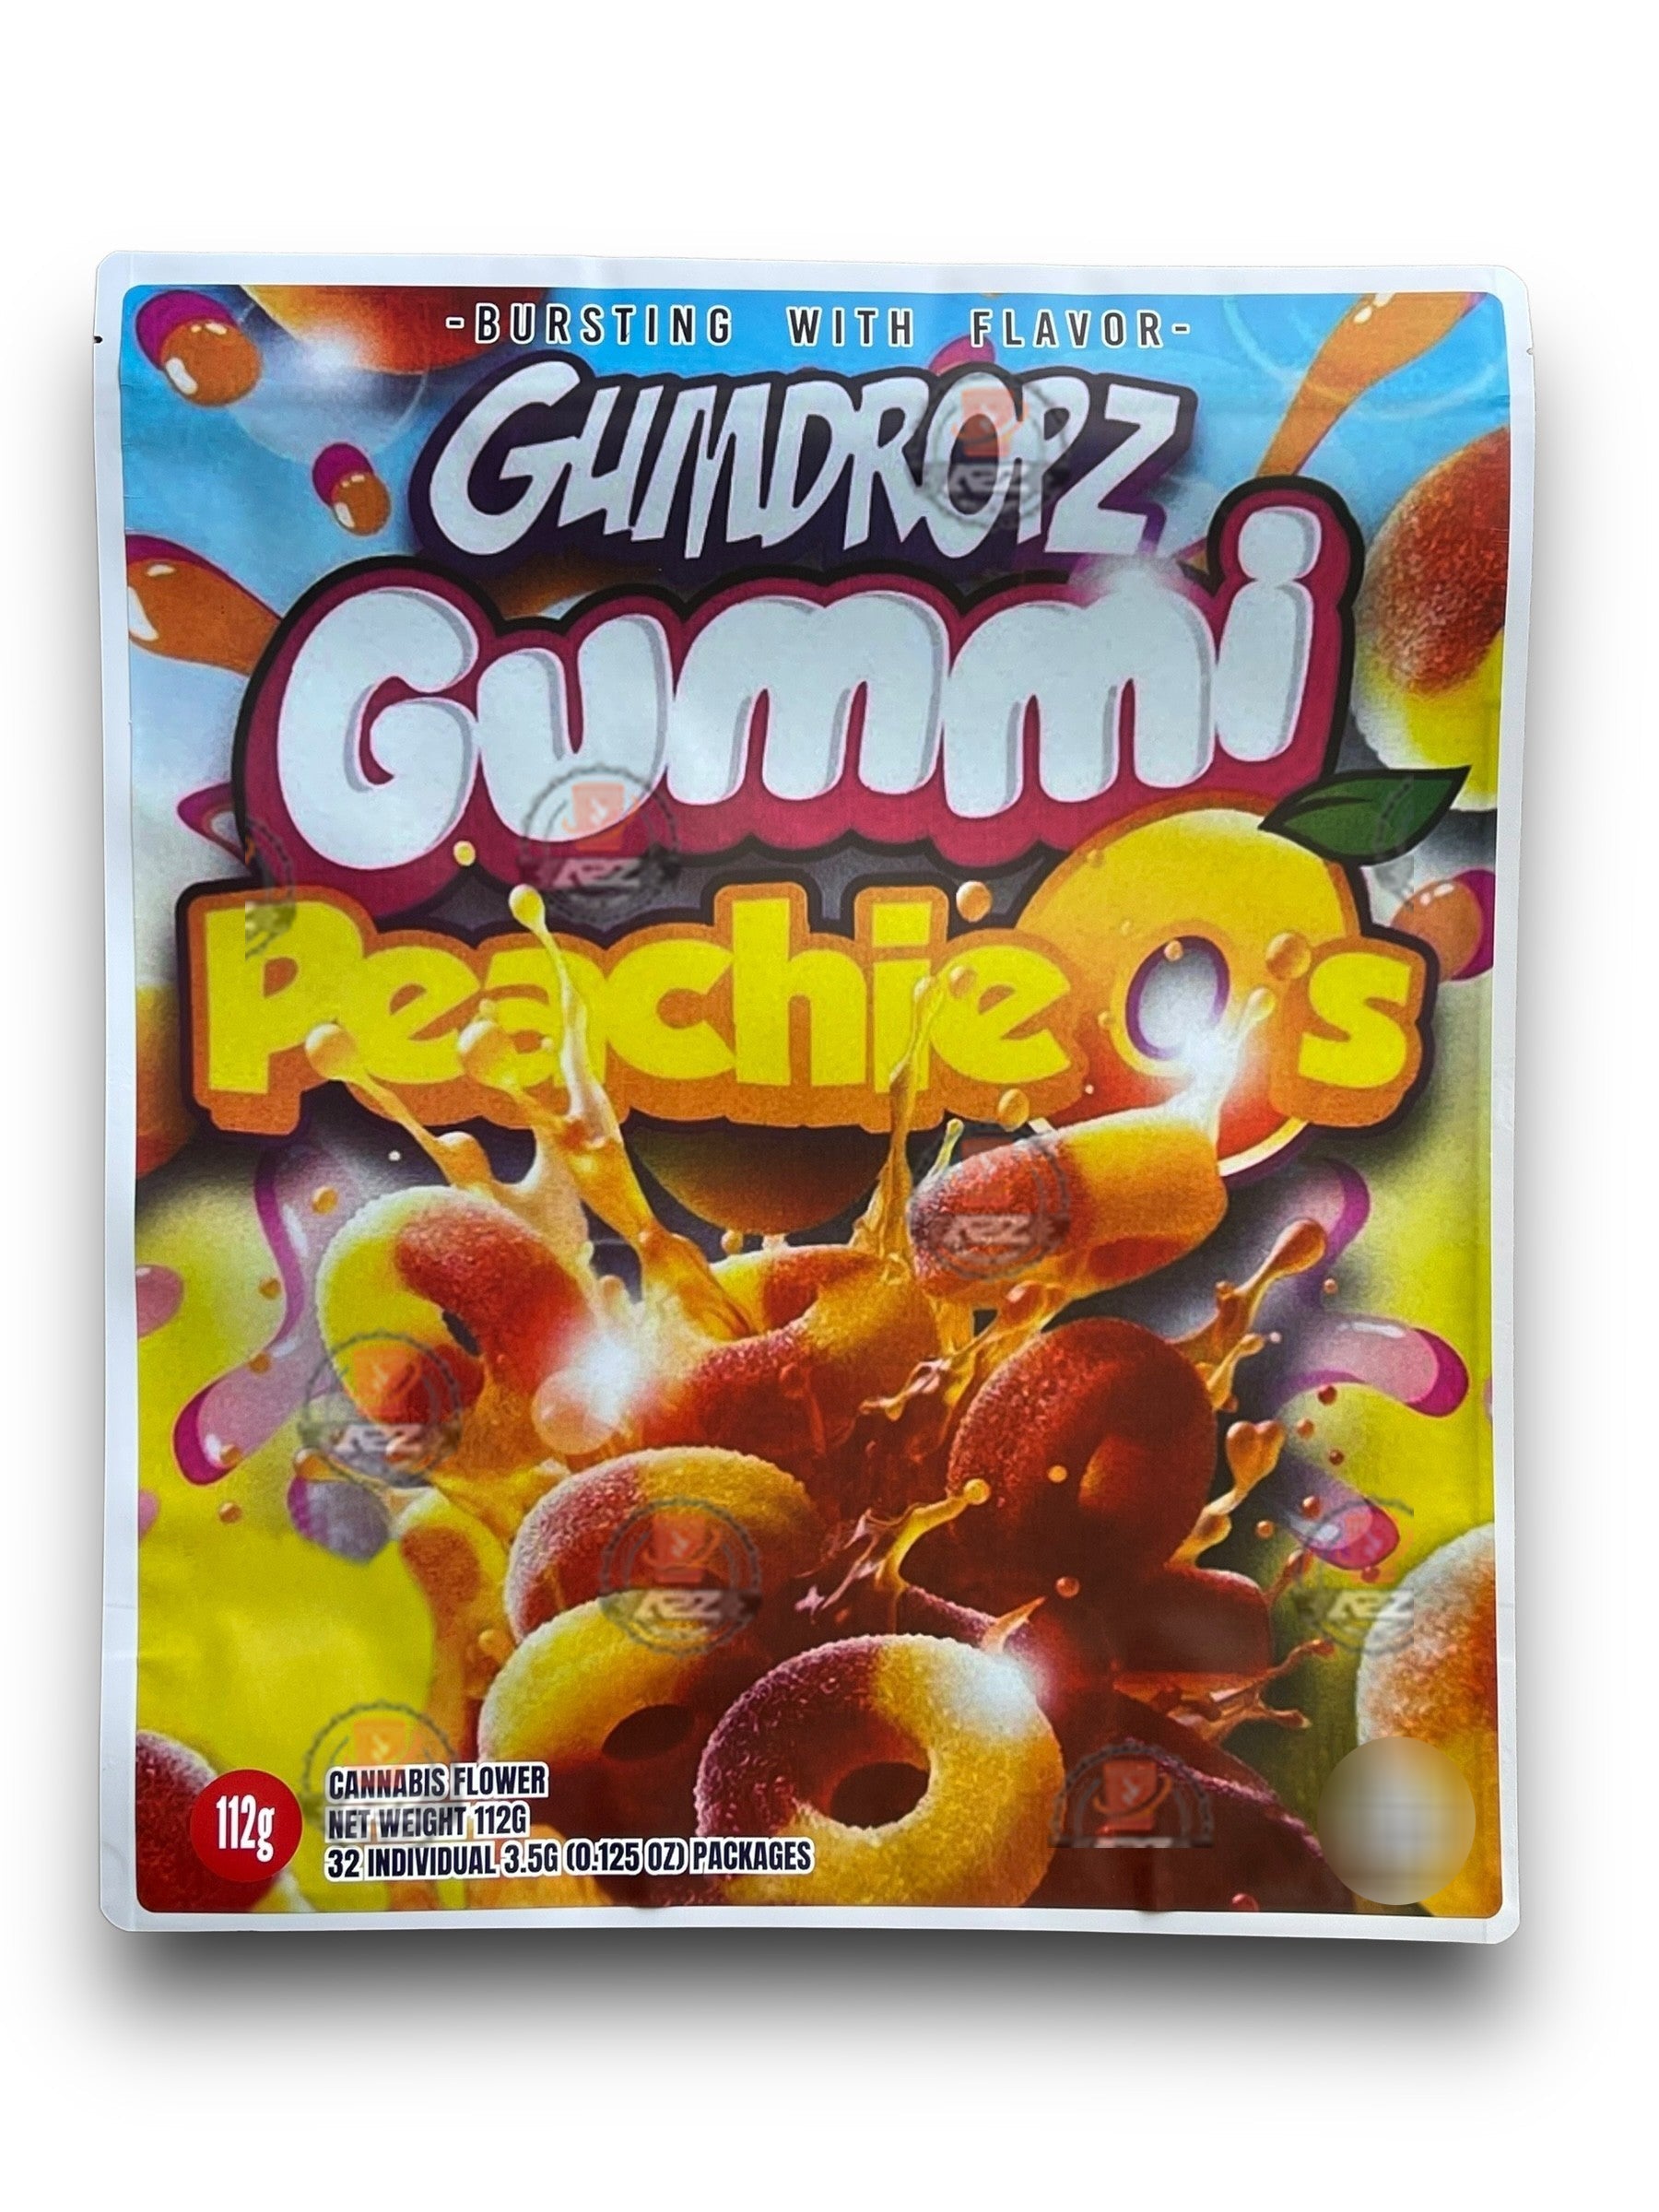 Gumdropz Gummi Peachieos 1 Pound Mylar Bag Net Weight 112G Packaging Only